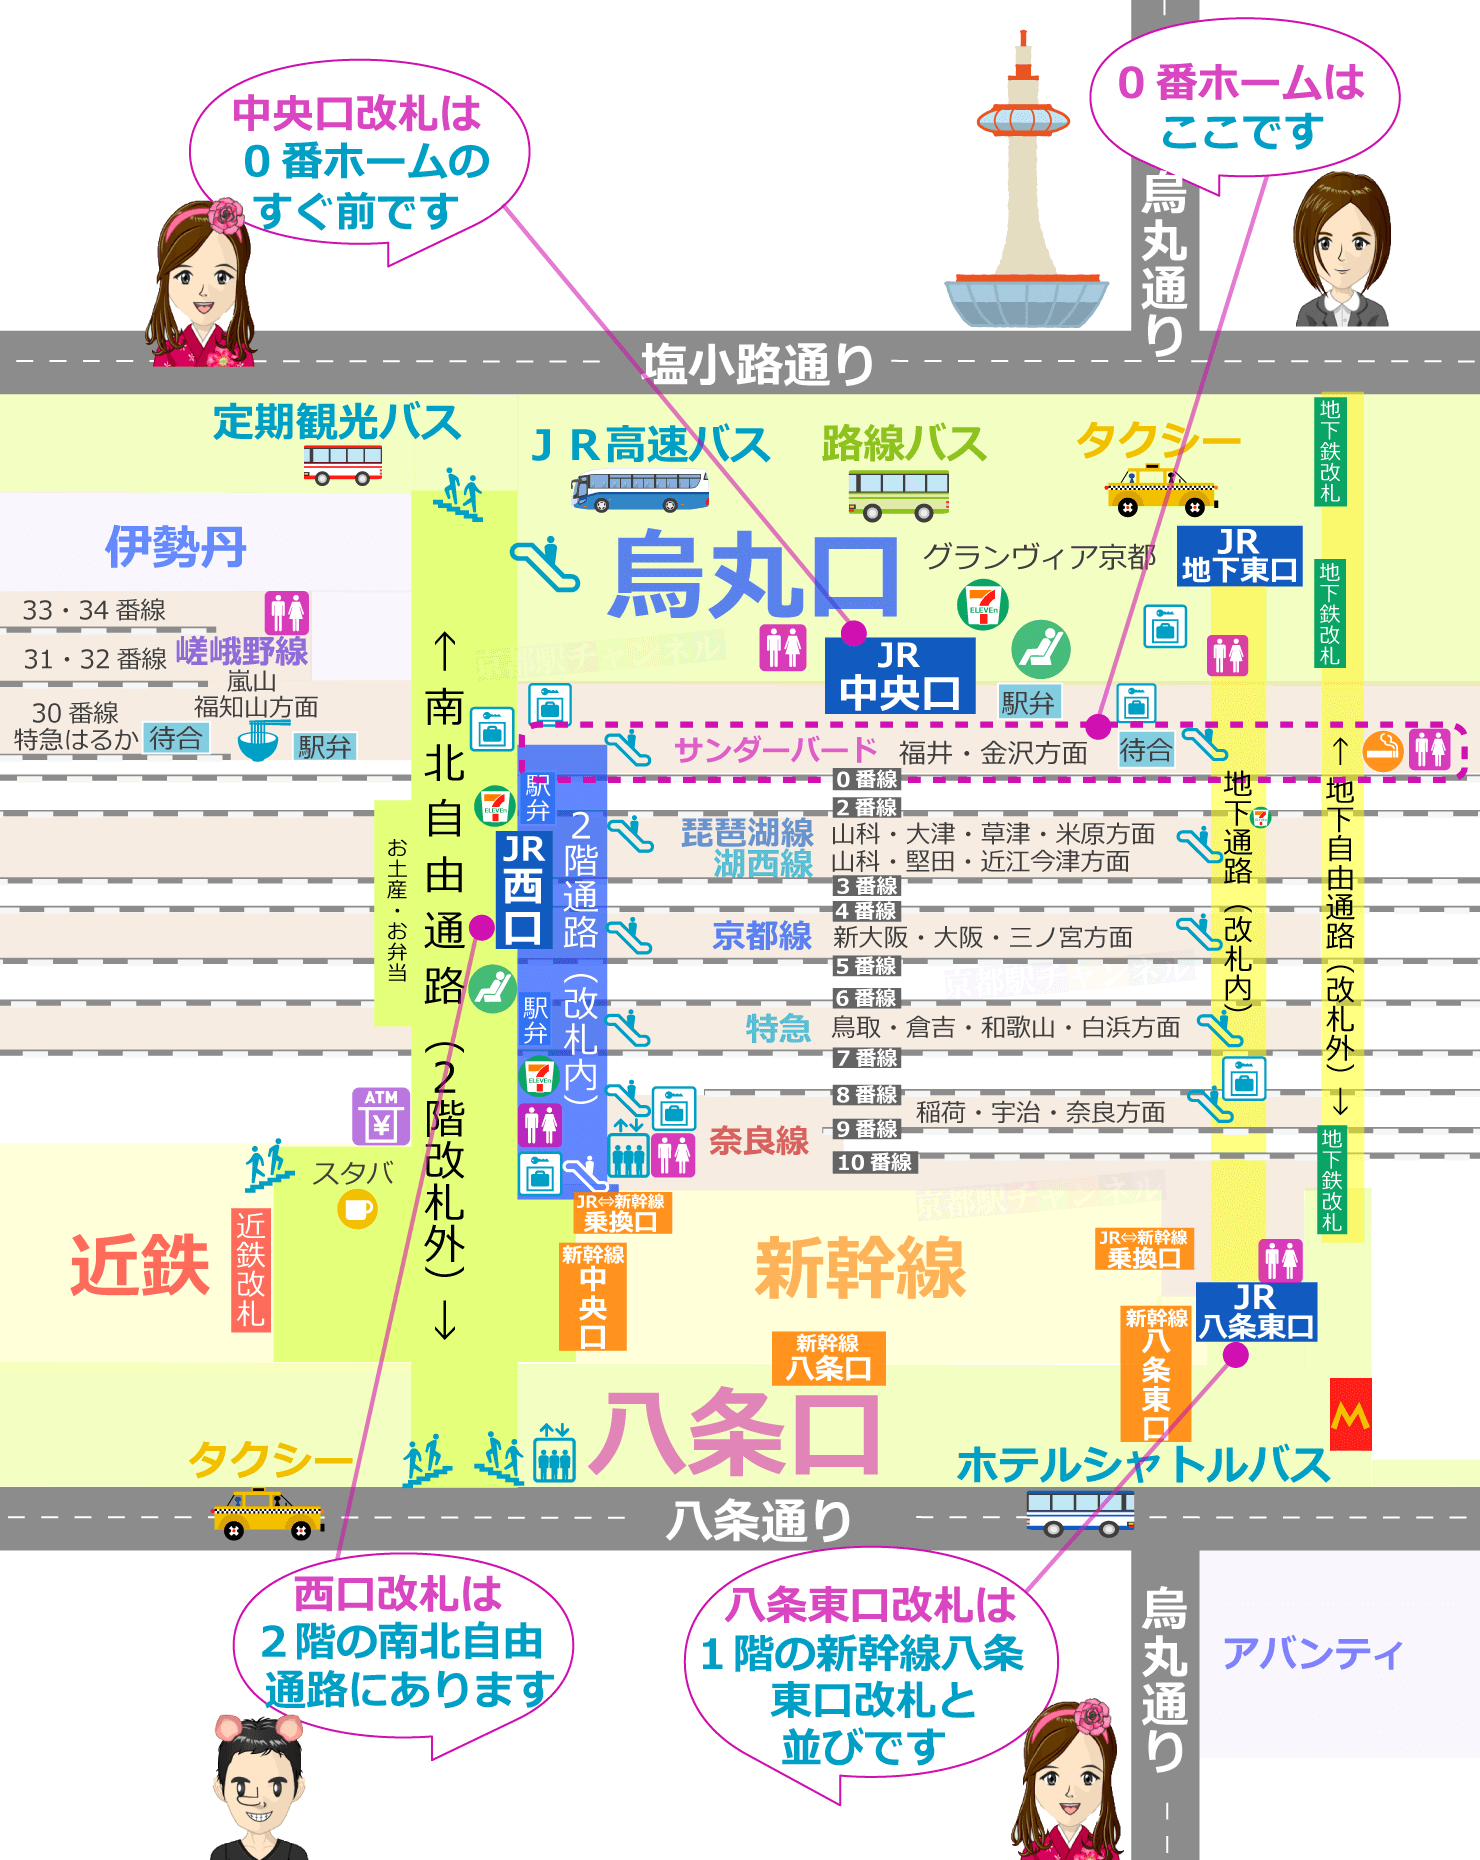 京都駅の全体図と0番線のマップ